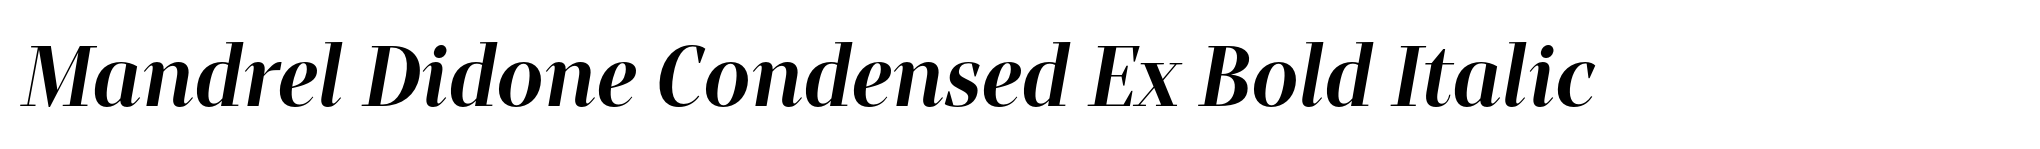 Mandrel Didone Condensed Ex Bold Italic image